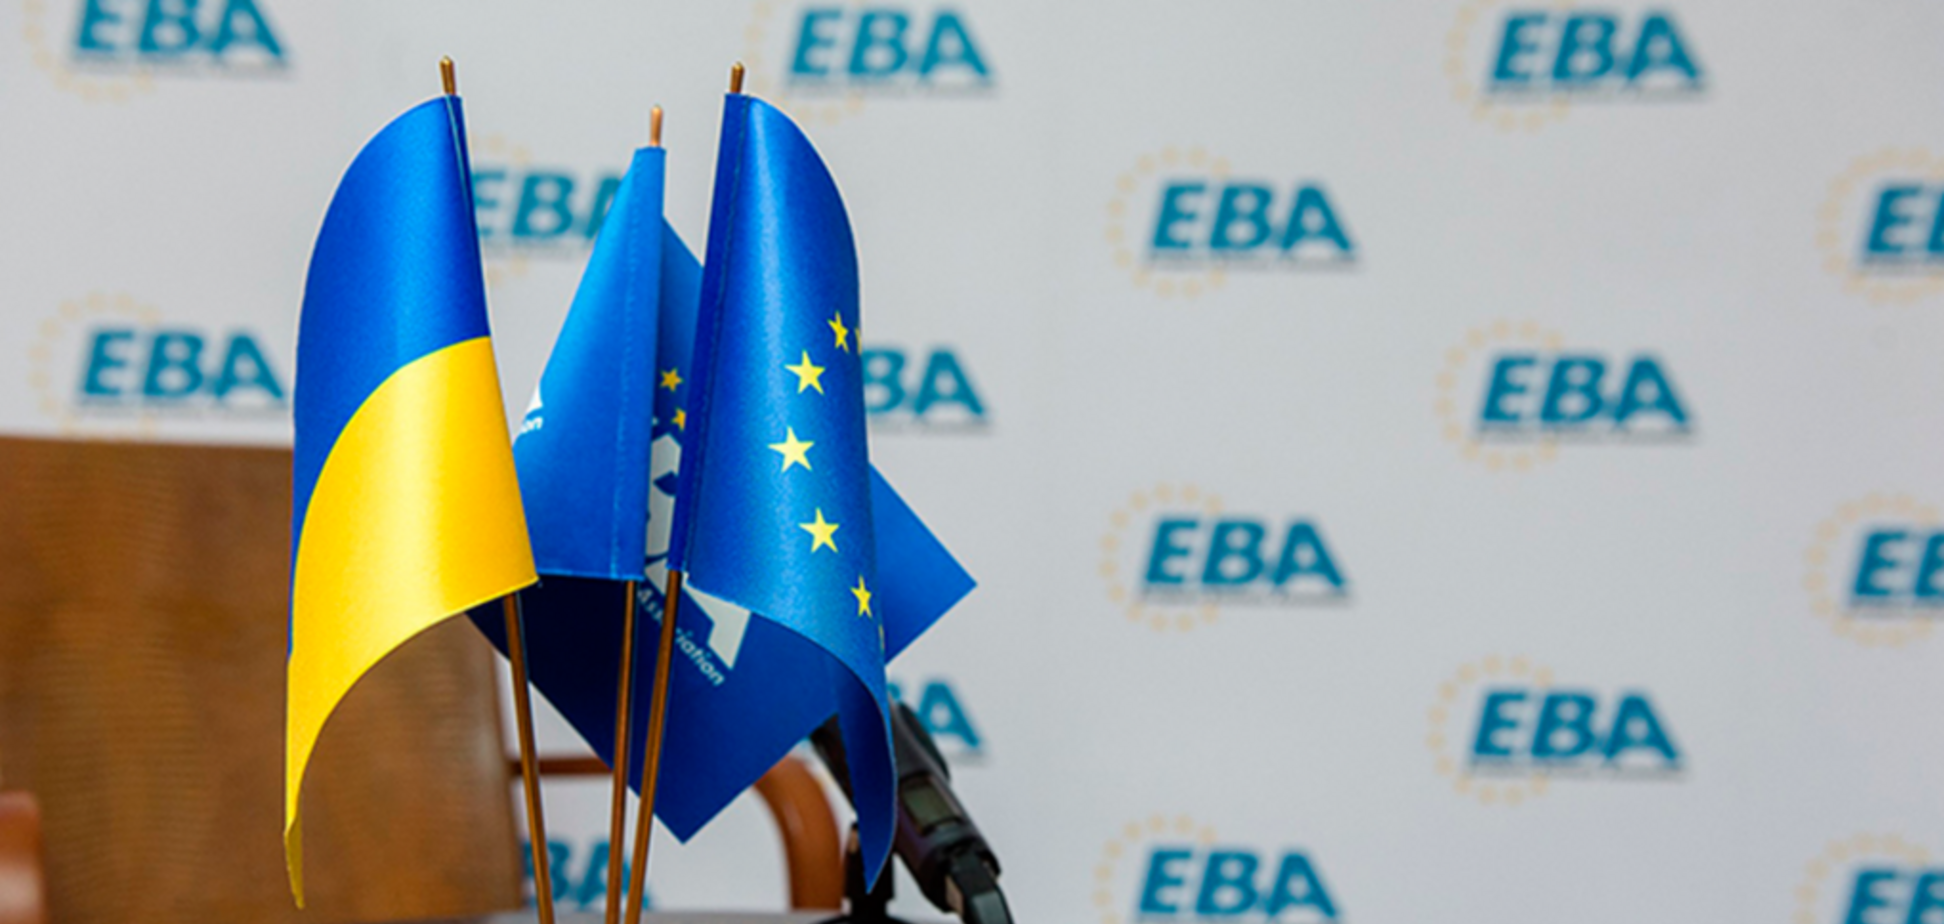 'Загроза для бізнесу': ЄБА виступила за внесення змін до закону №1210